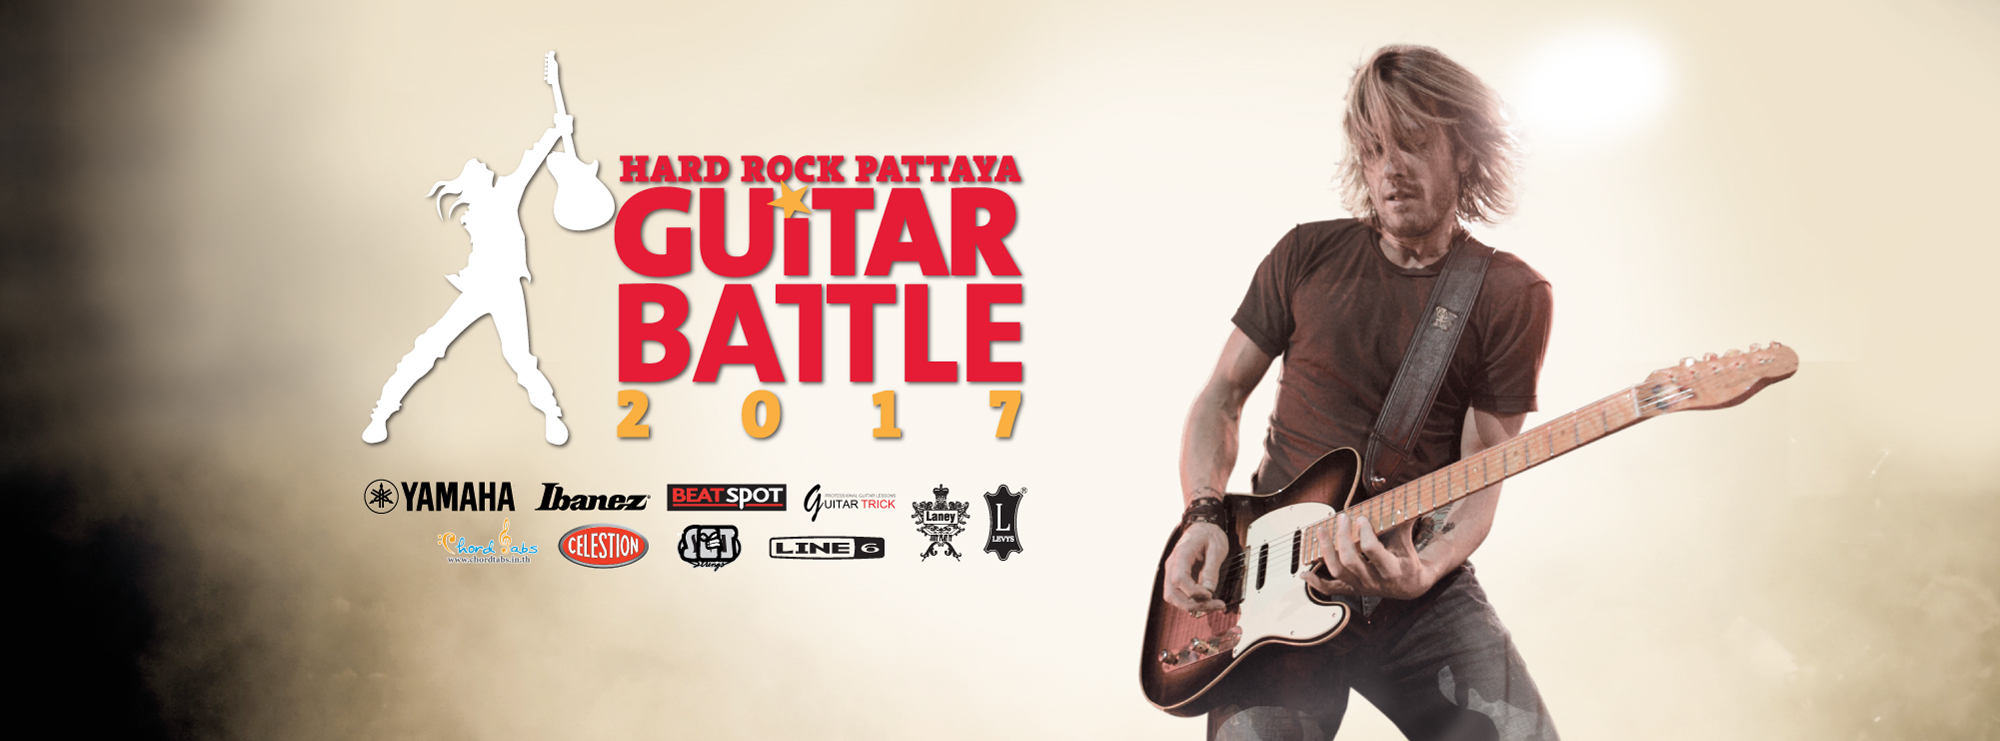 Hard Rock Pattaya Guitar Battle 2017